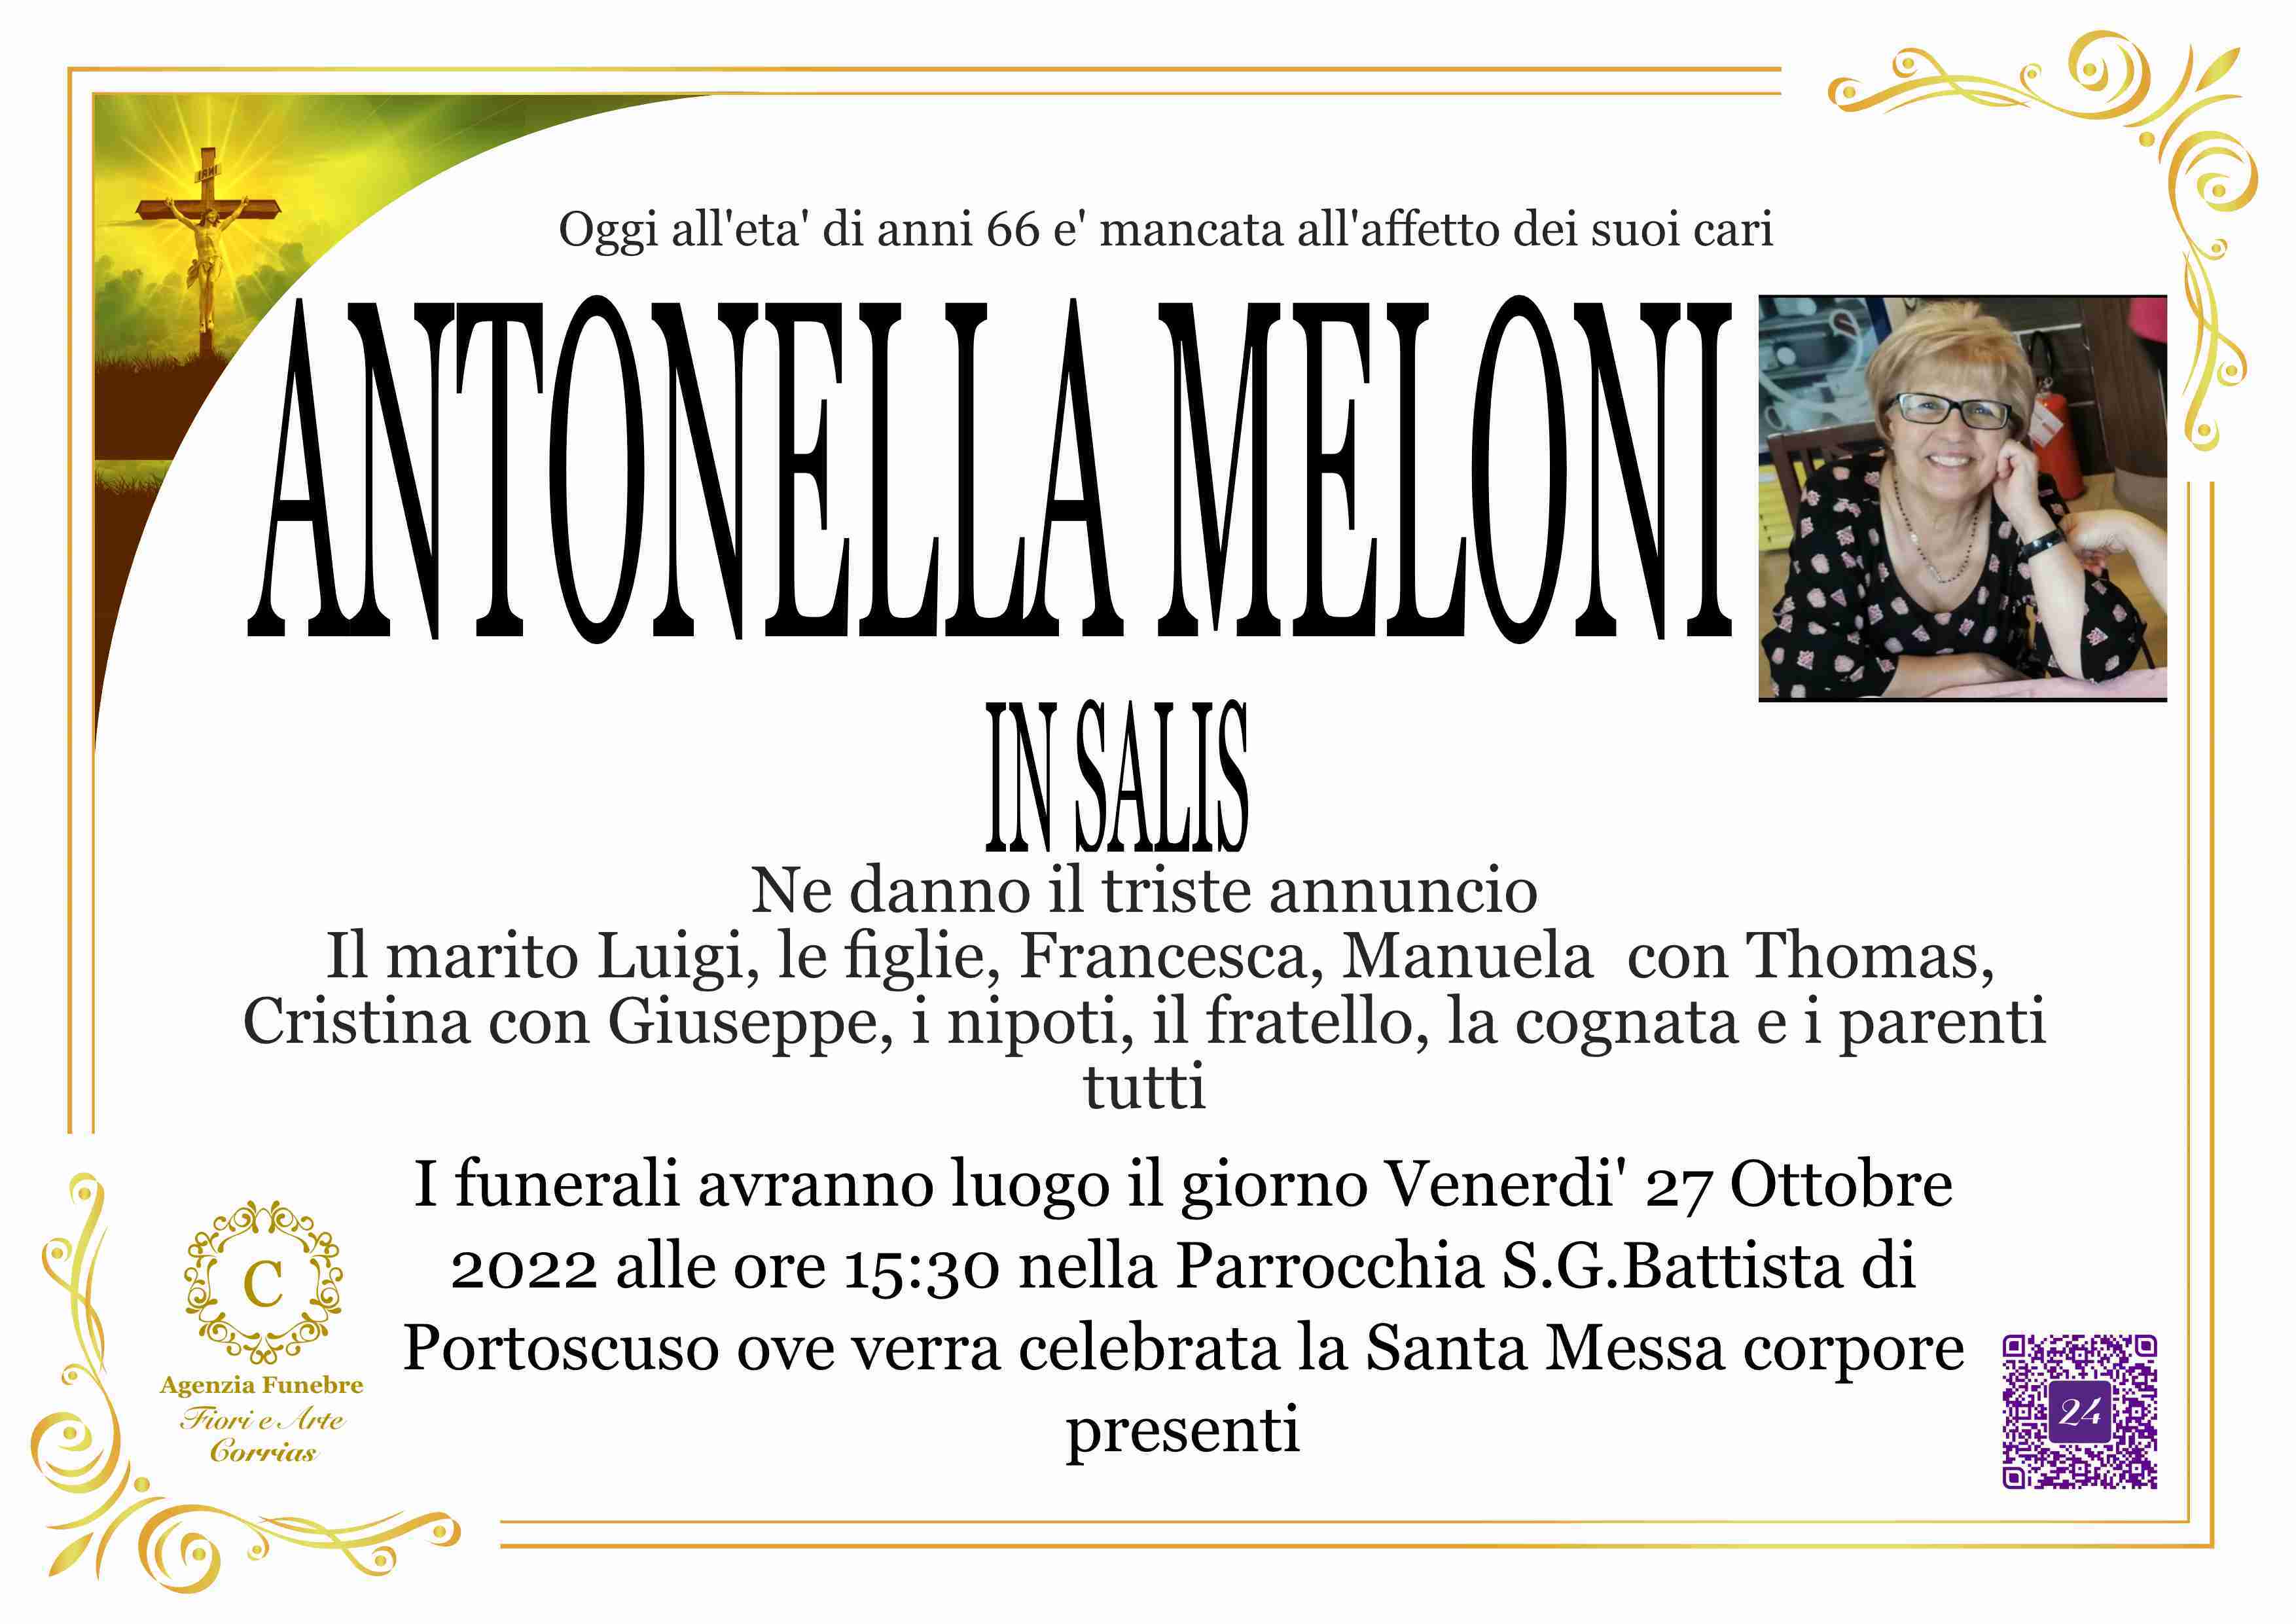 Antonella Meloni